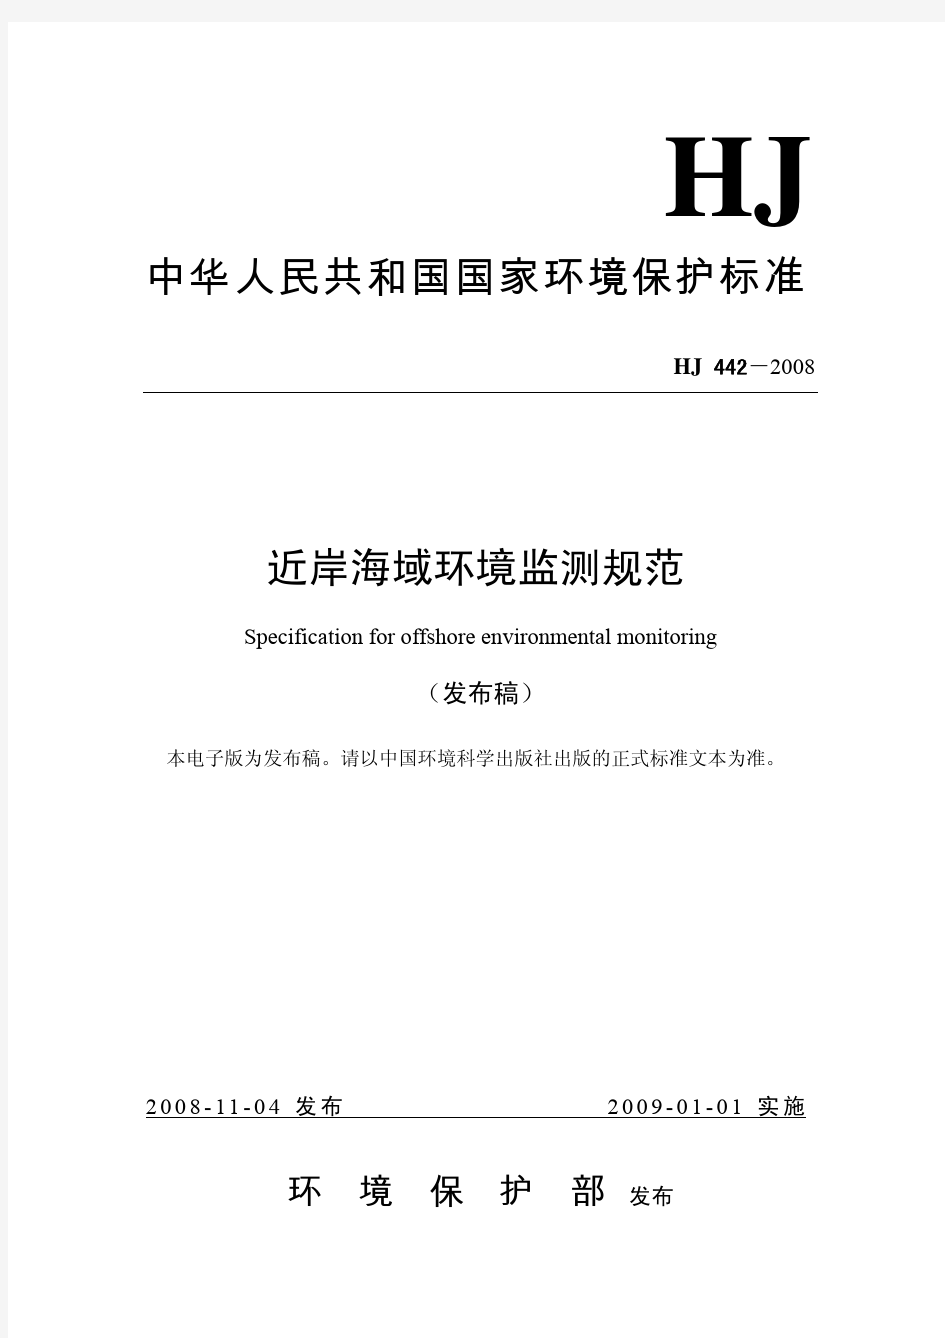 中华人民共和国国家环境保护标准近岸海域环境监测规范